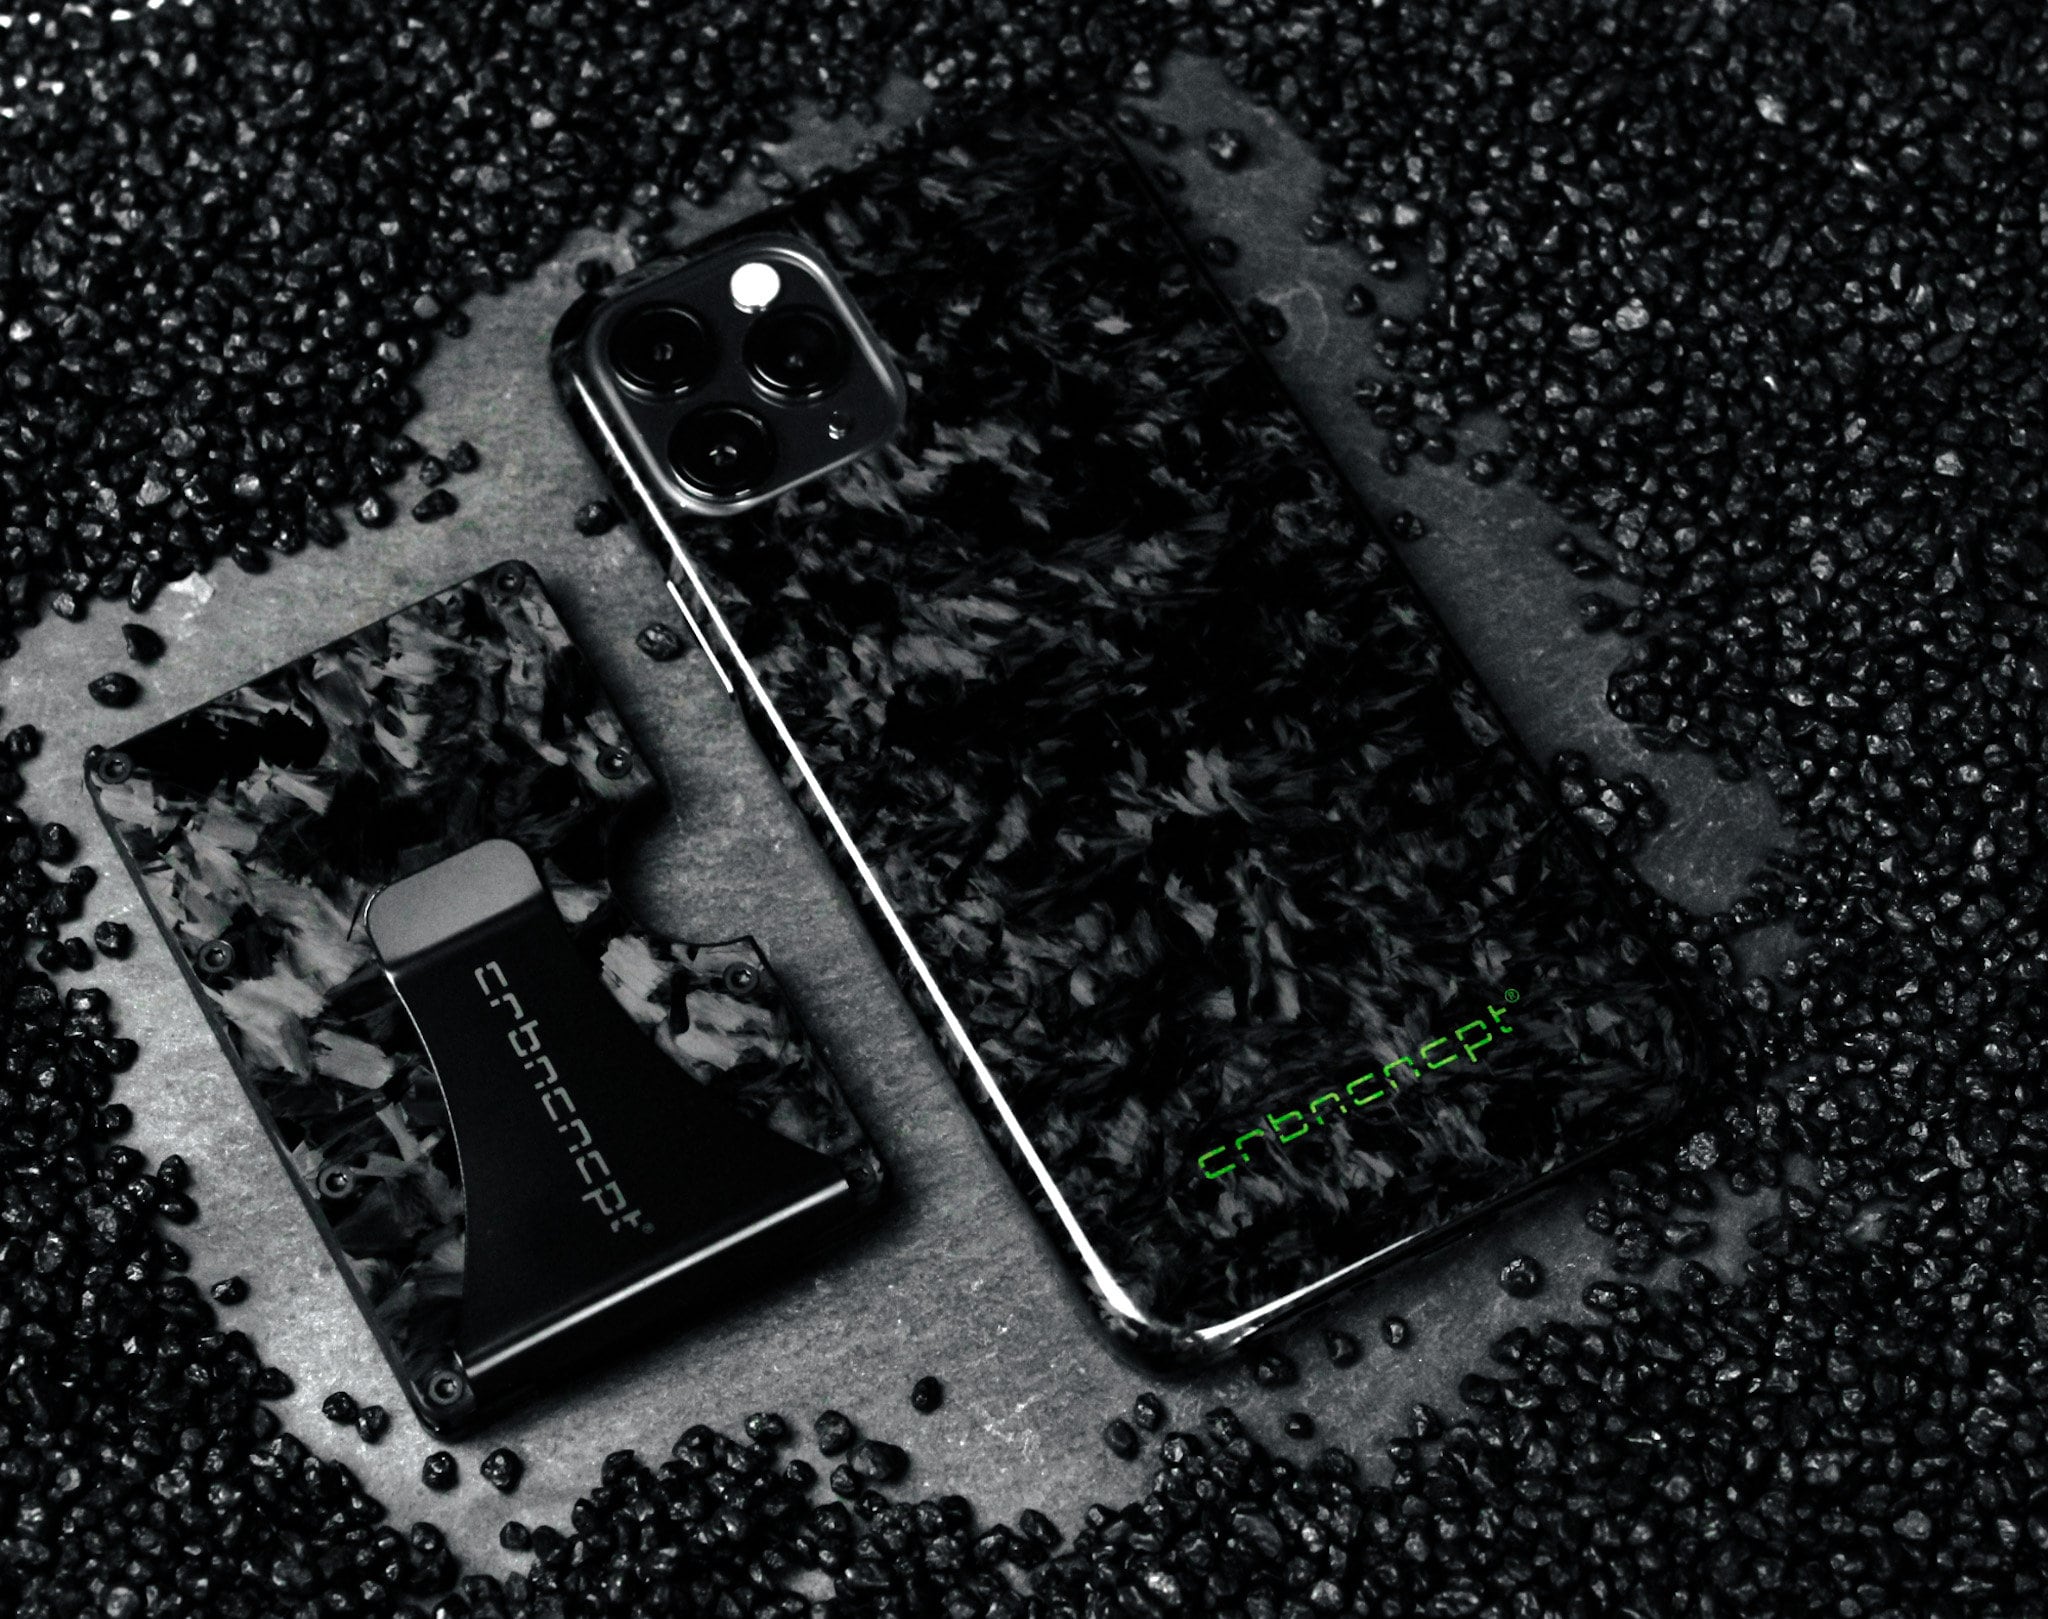 Crbncncpt® Black Forged Carbon Schutzhülle für Iphone X Max - Etsy.de